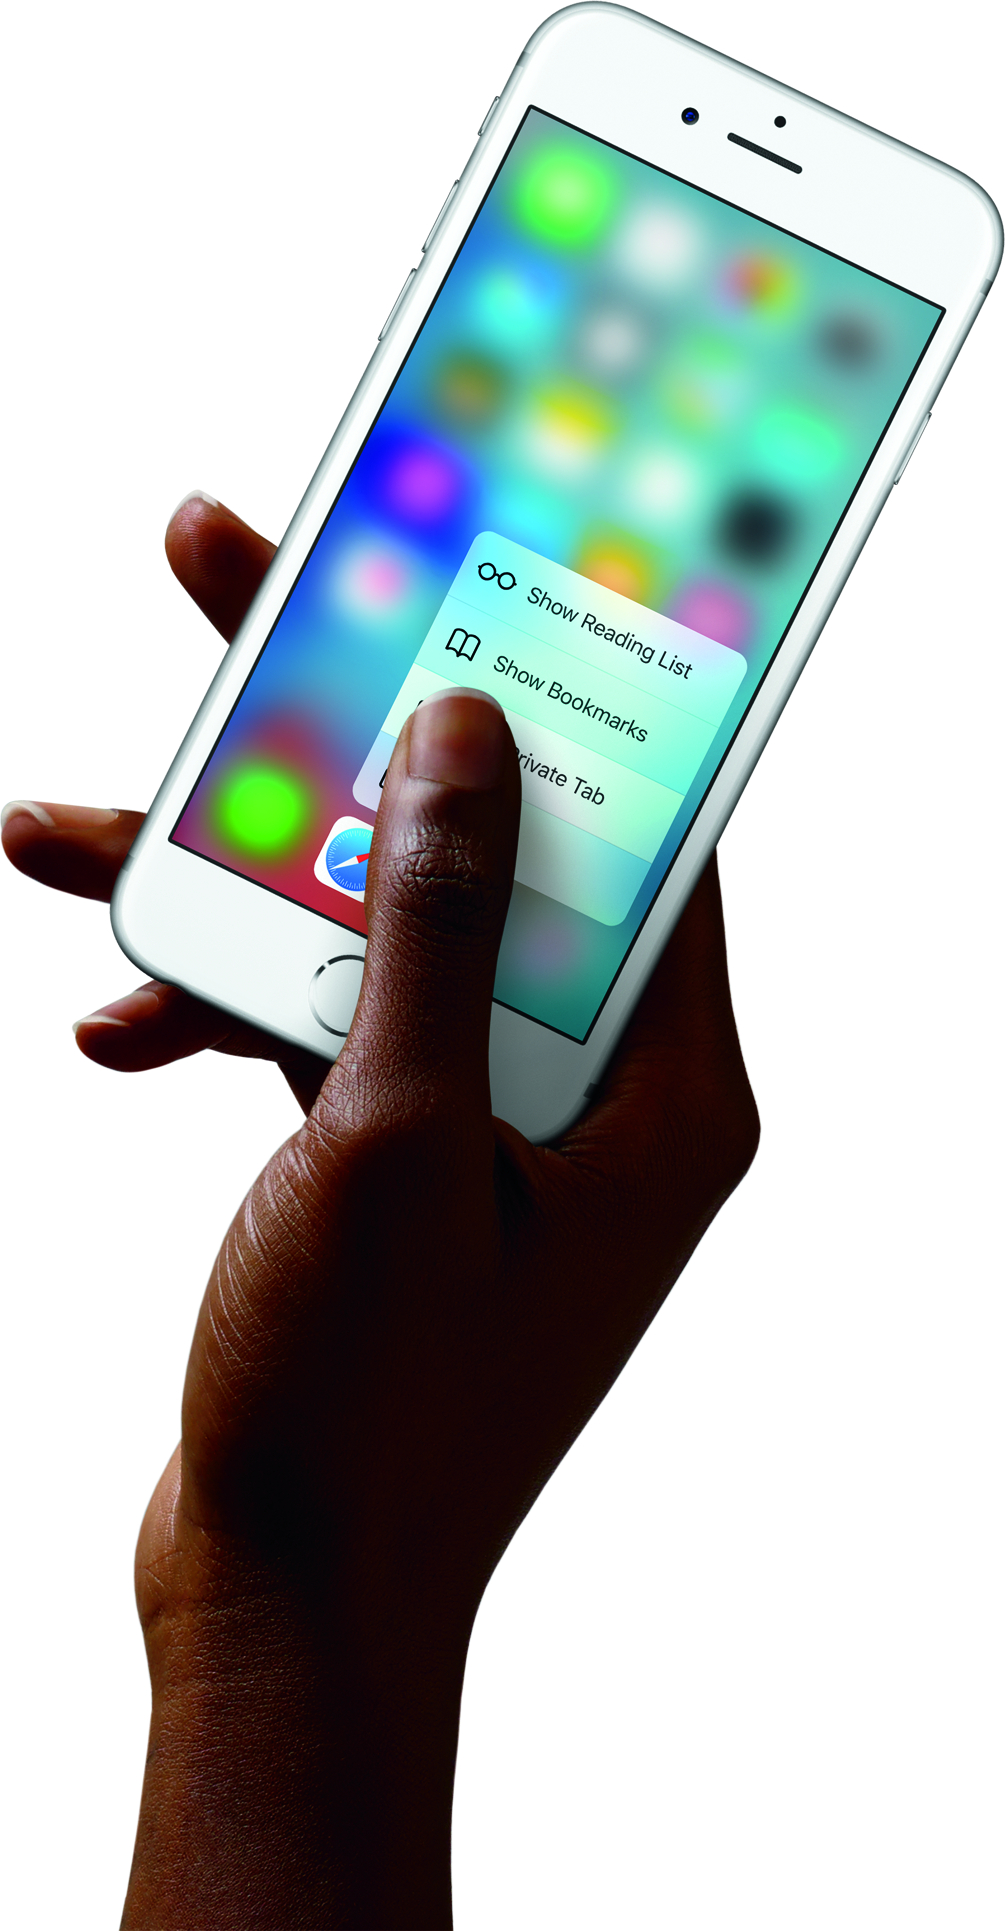 Gebrauchtes Apple iPhone 6s neuwertig ab sofort bei der Telekom erhältlich